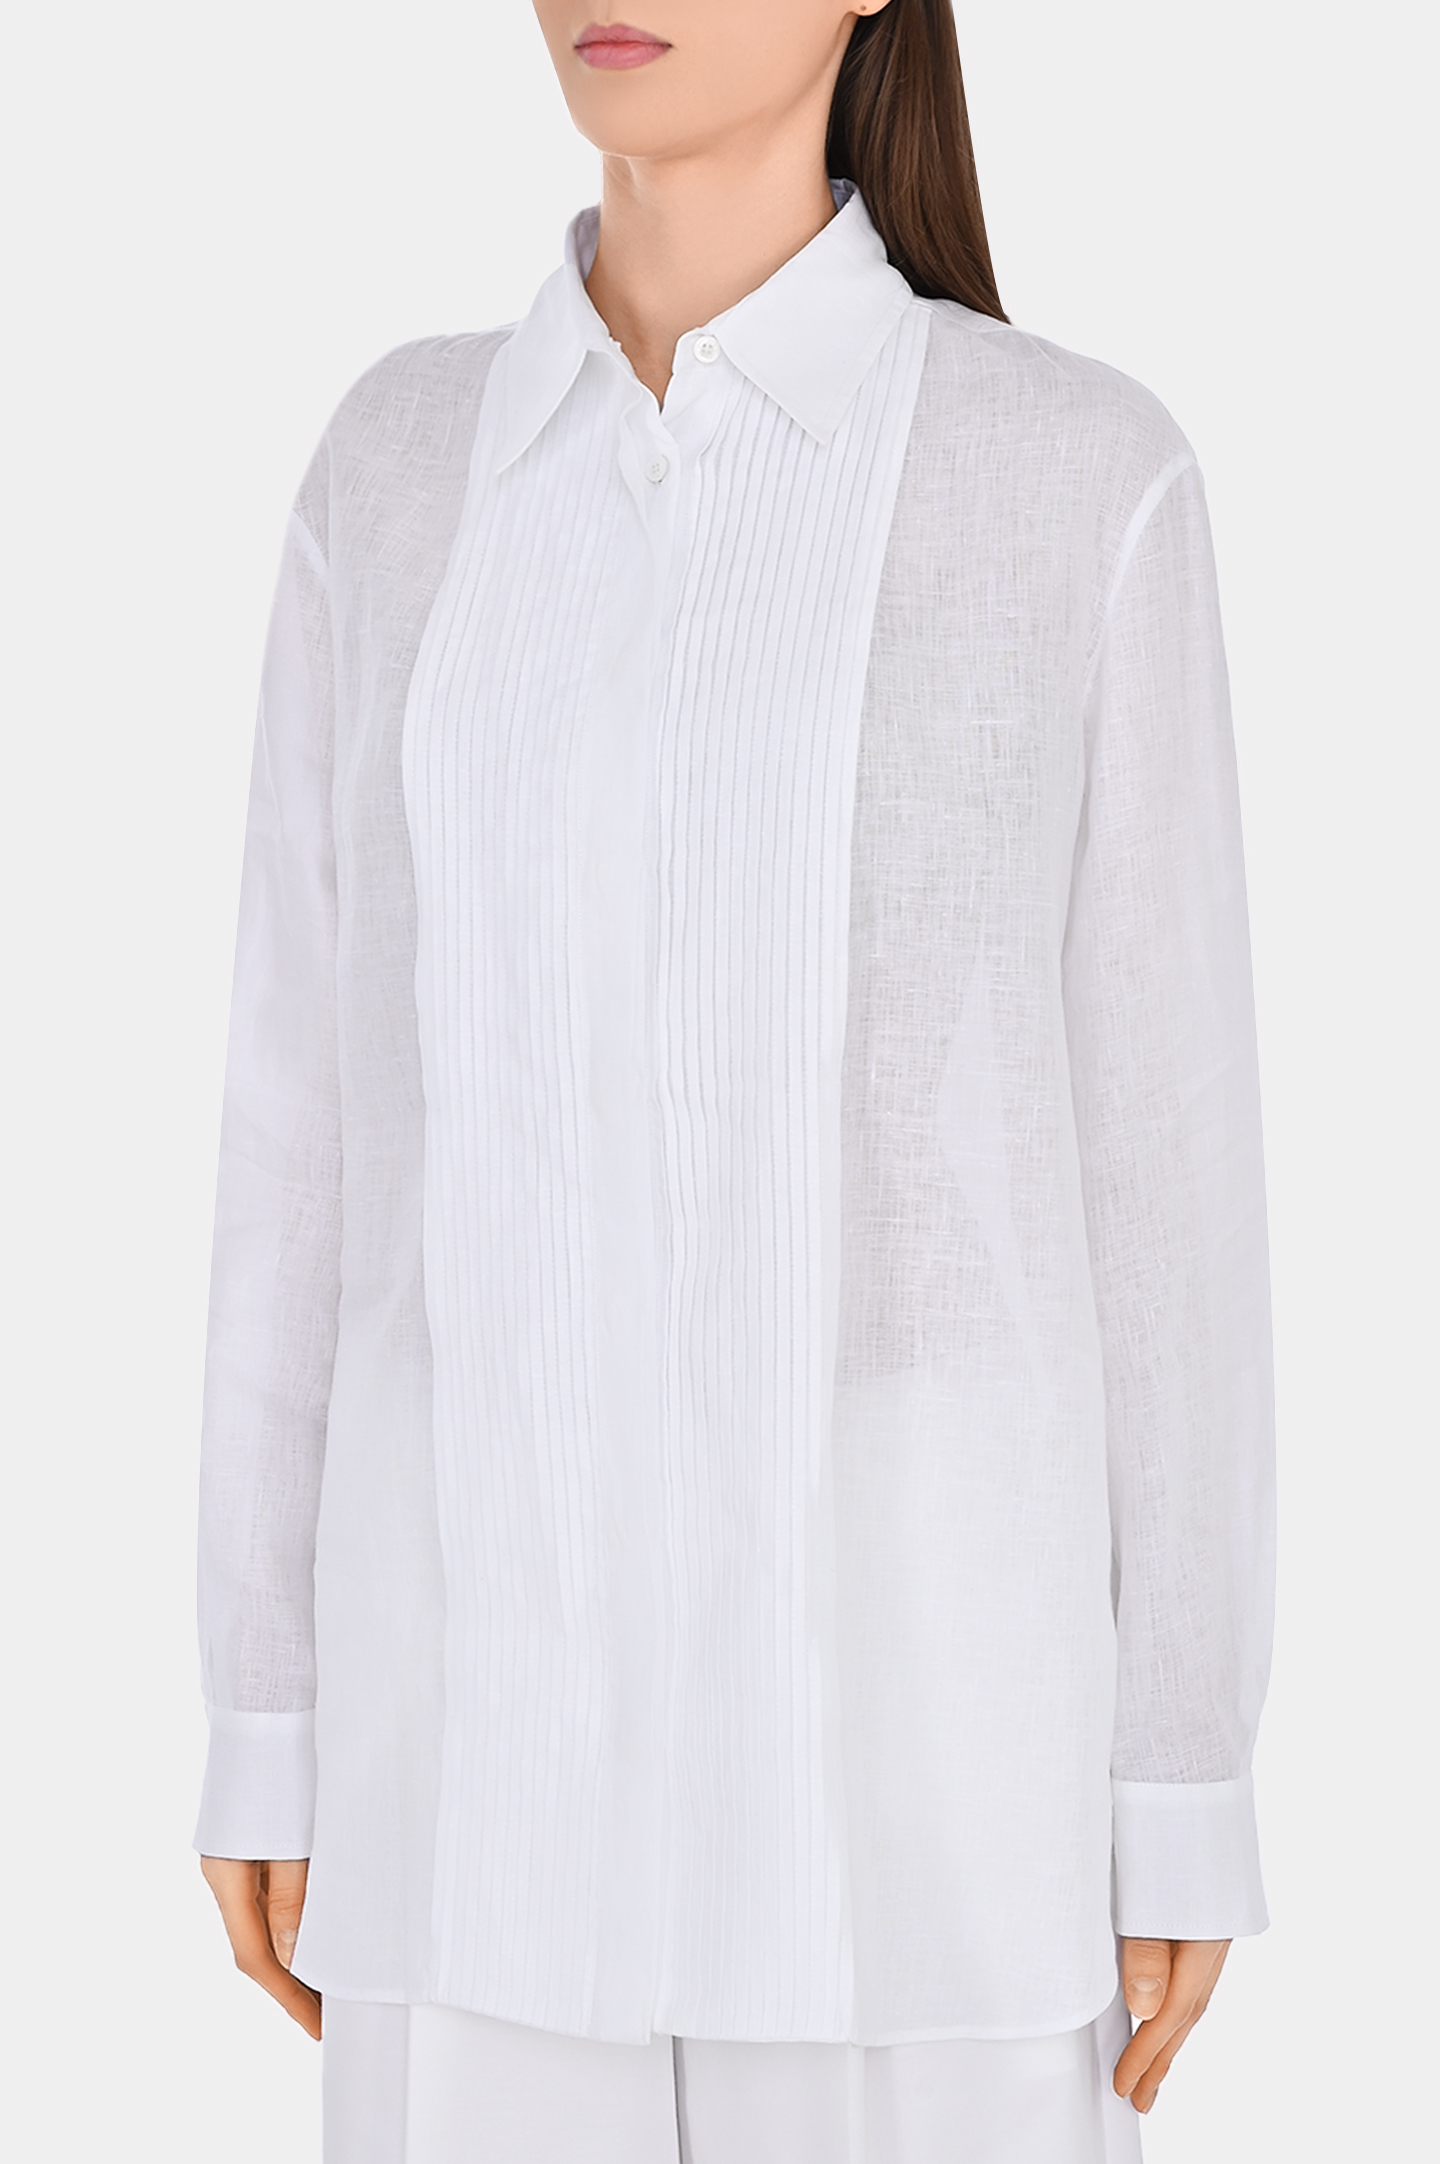 Льняная рубашка с плиссировкой KITON D49405H062070, цвет: Белый, Женский